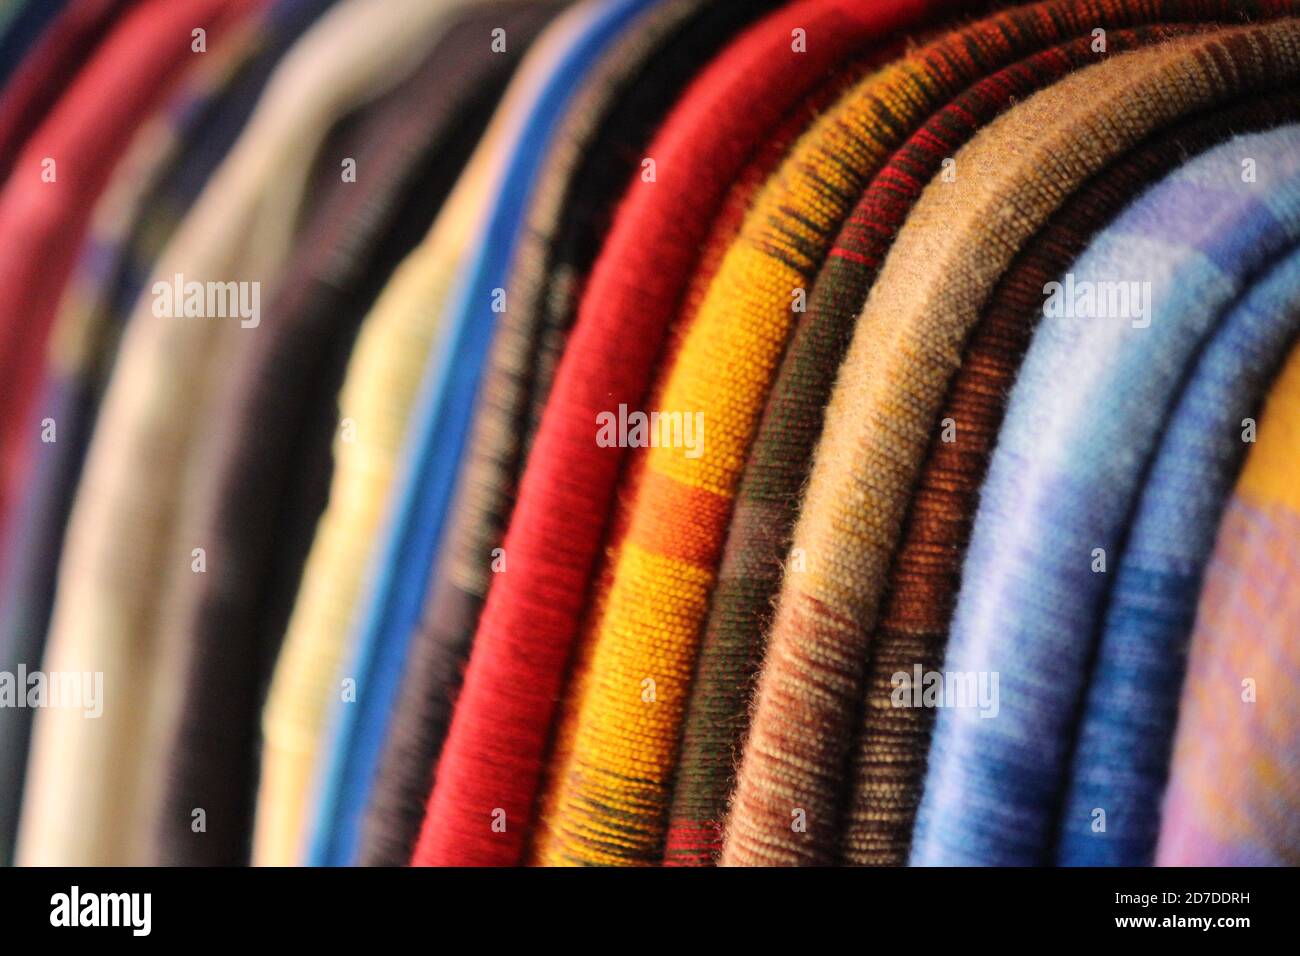 Handmade Silk Scarves in Morocco Stock Photo